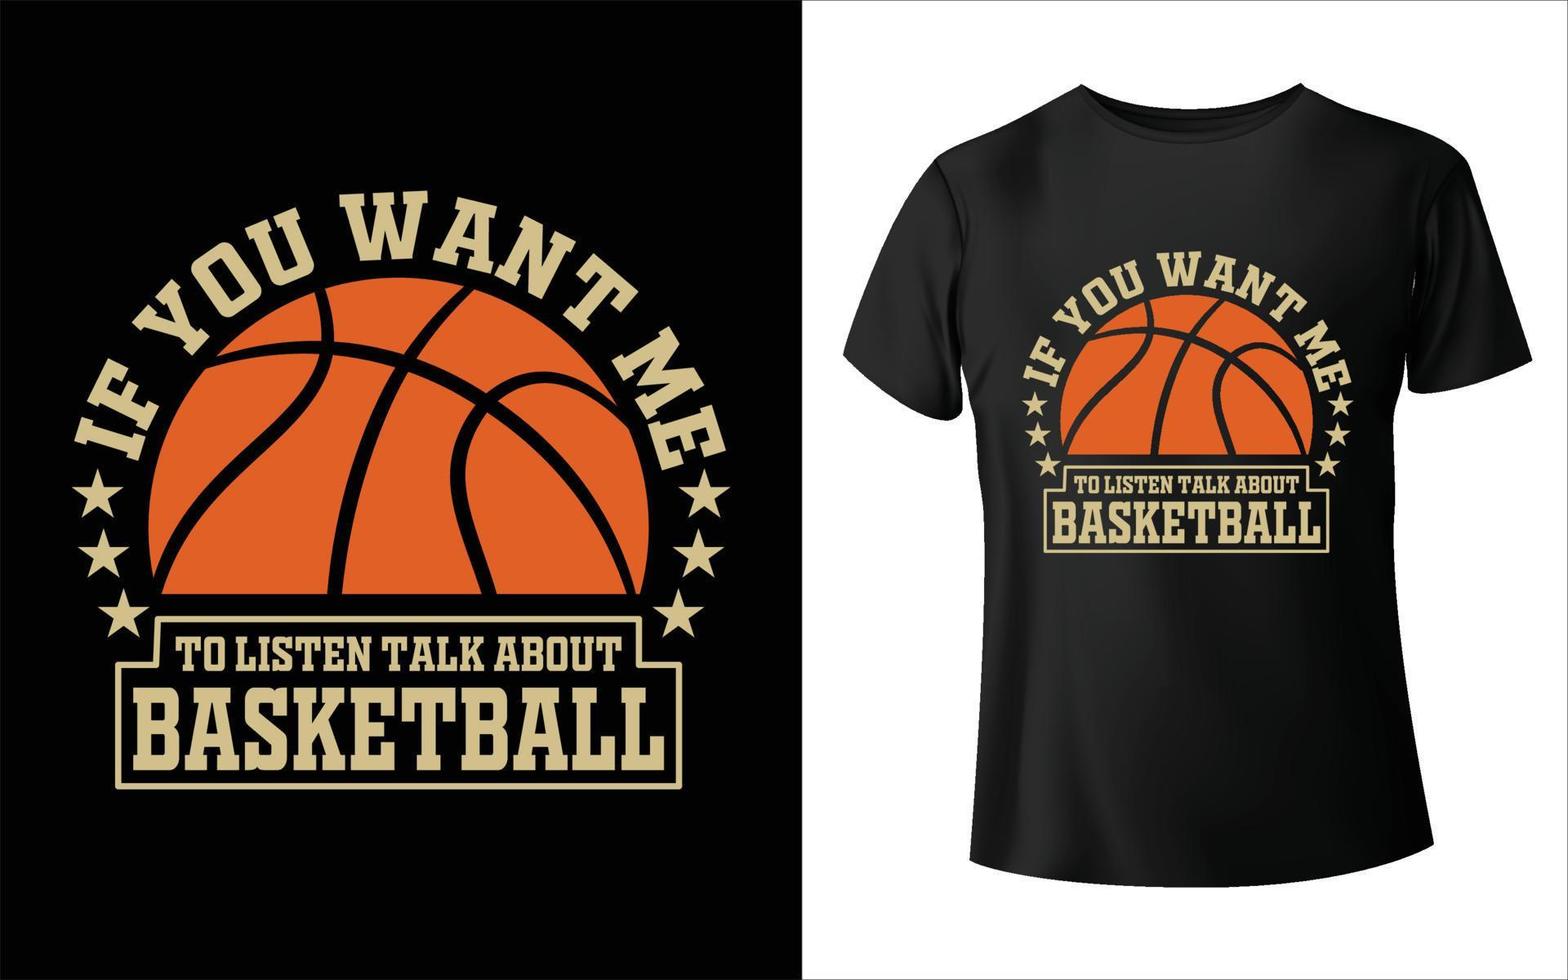 om du vilja mig till lyssna prata handla om basketboll spelare t skjorta design - vektor grafisk, typografisk affisch, årgång, märka, bricka, logotyp, ikon eller t-shirt